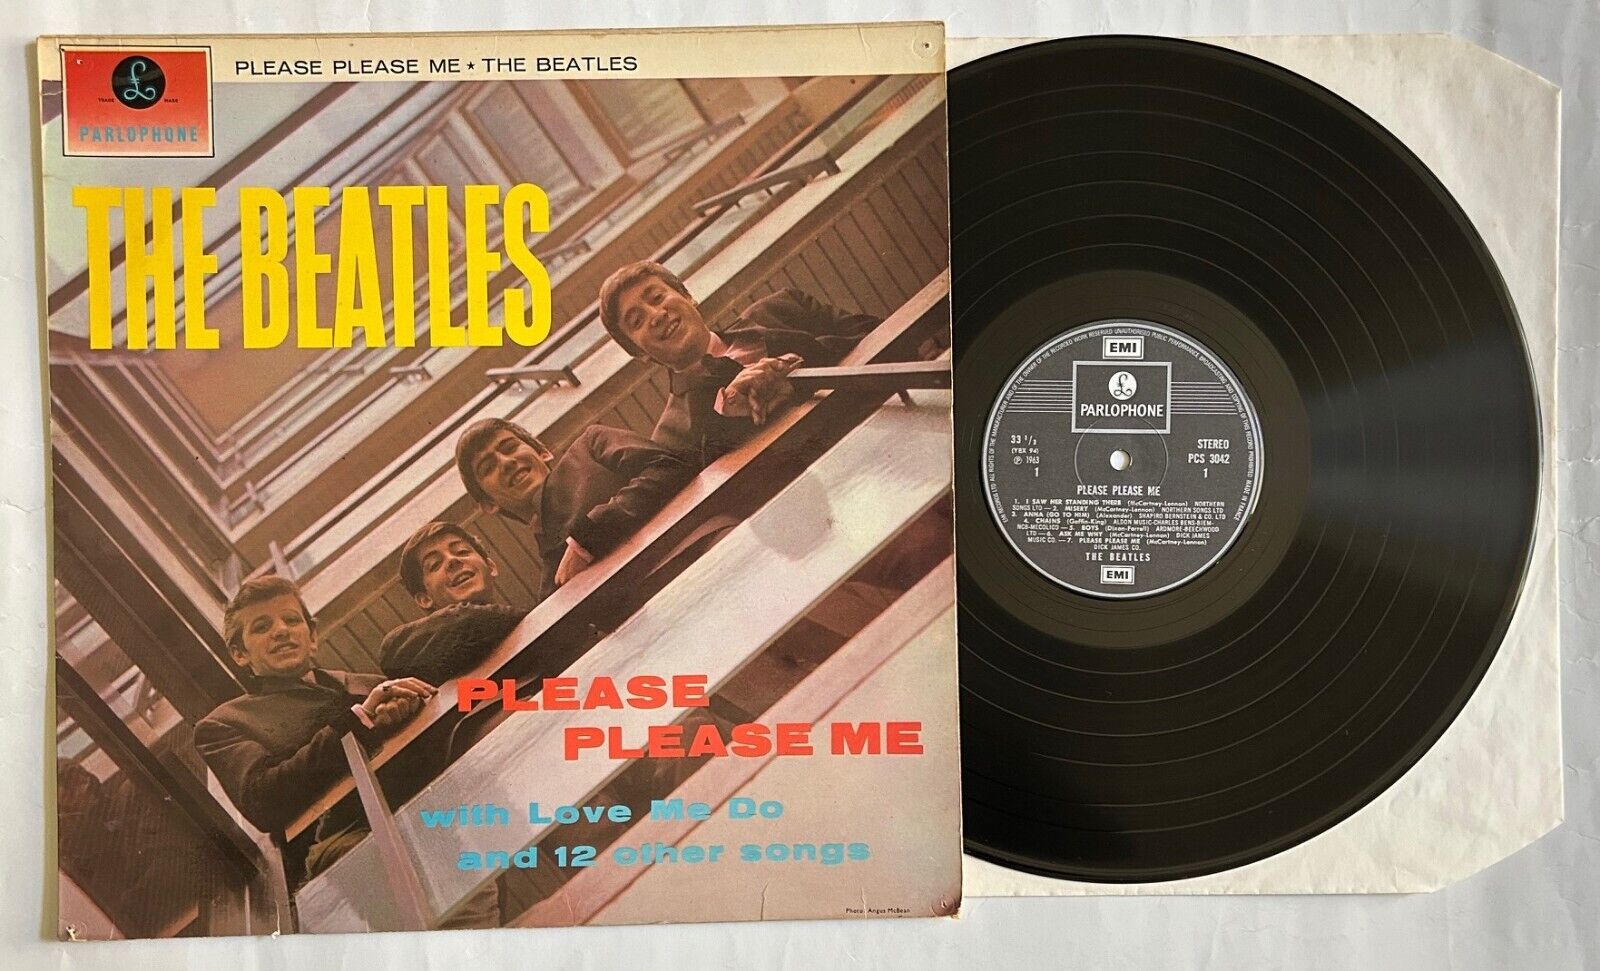 THE BEATLES. PLEASE PLEASE ME. UK VINYL LP. PARLOPHONE PCS 3042. STEREO. 1974